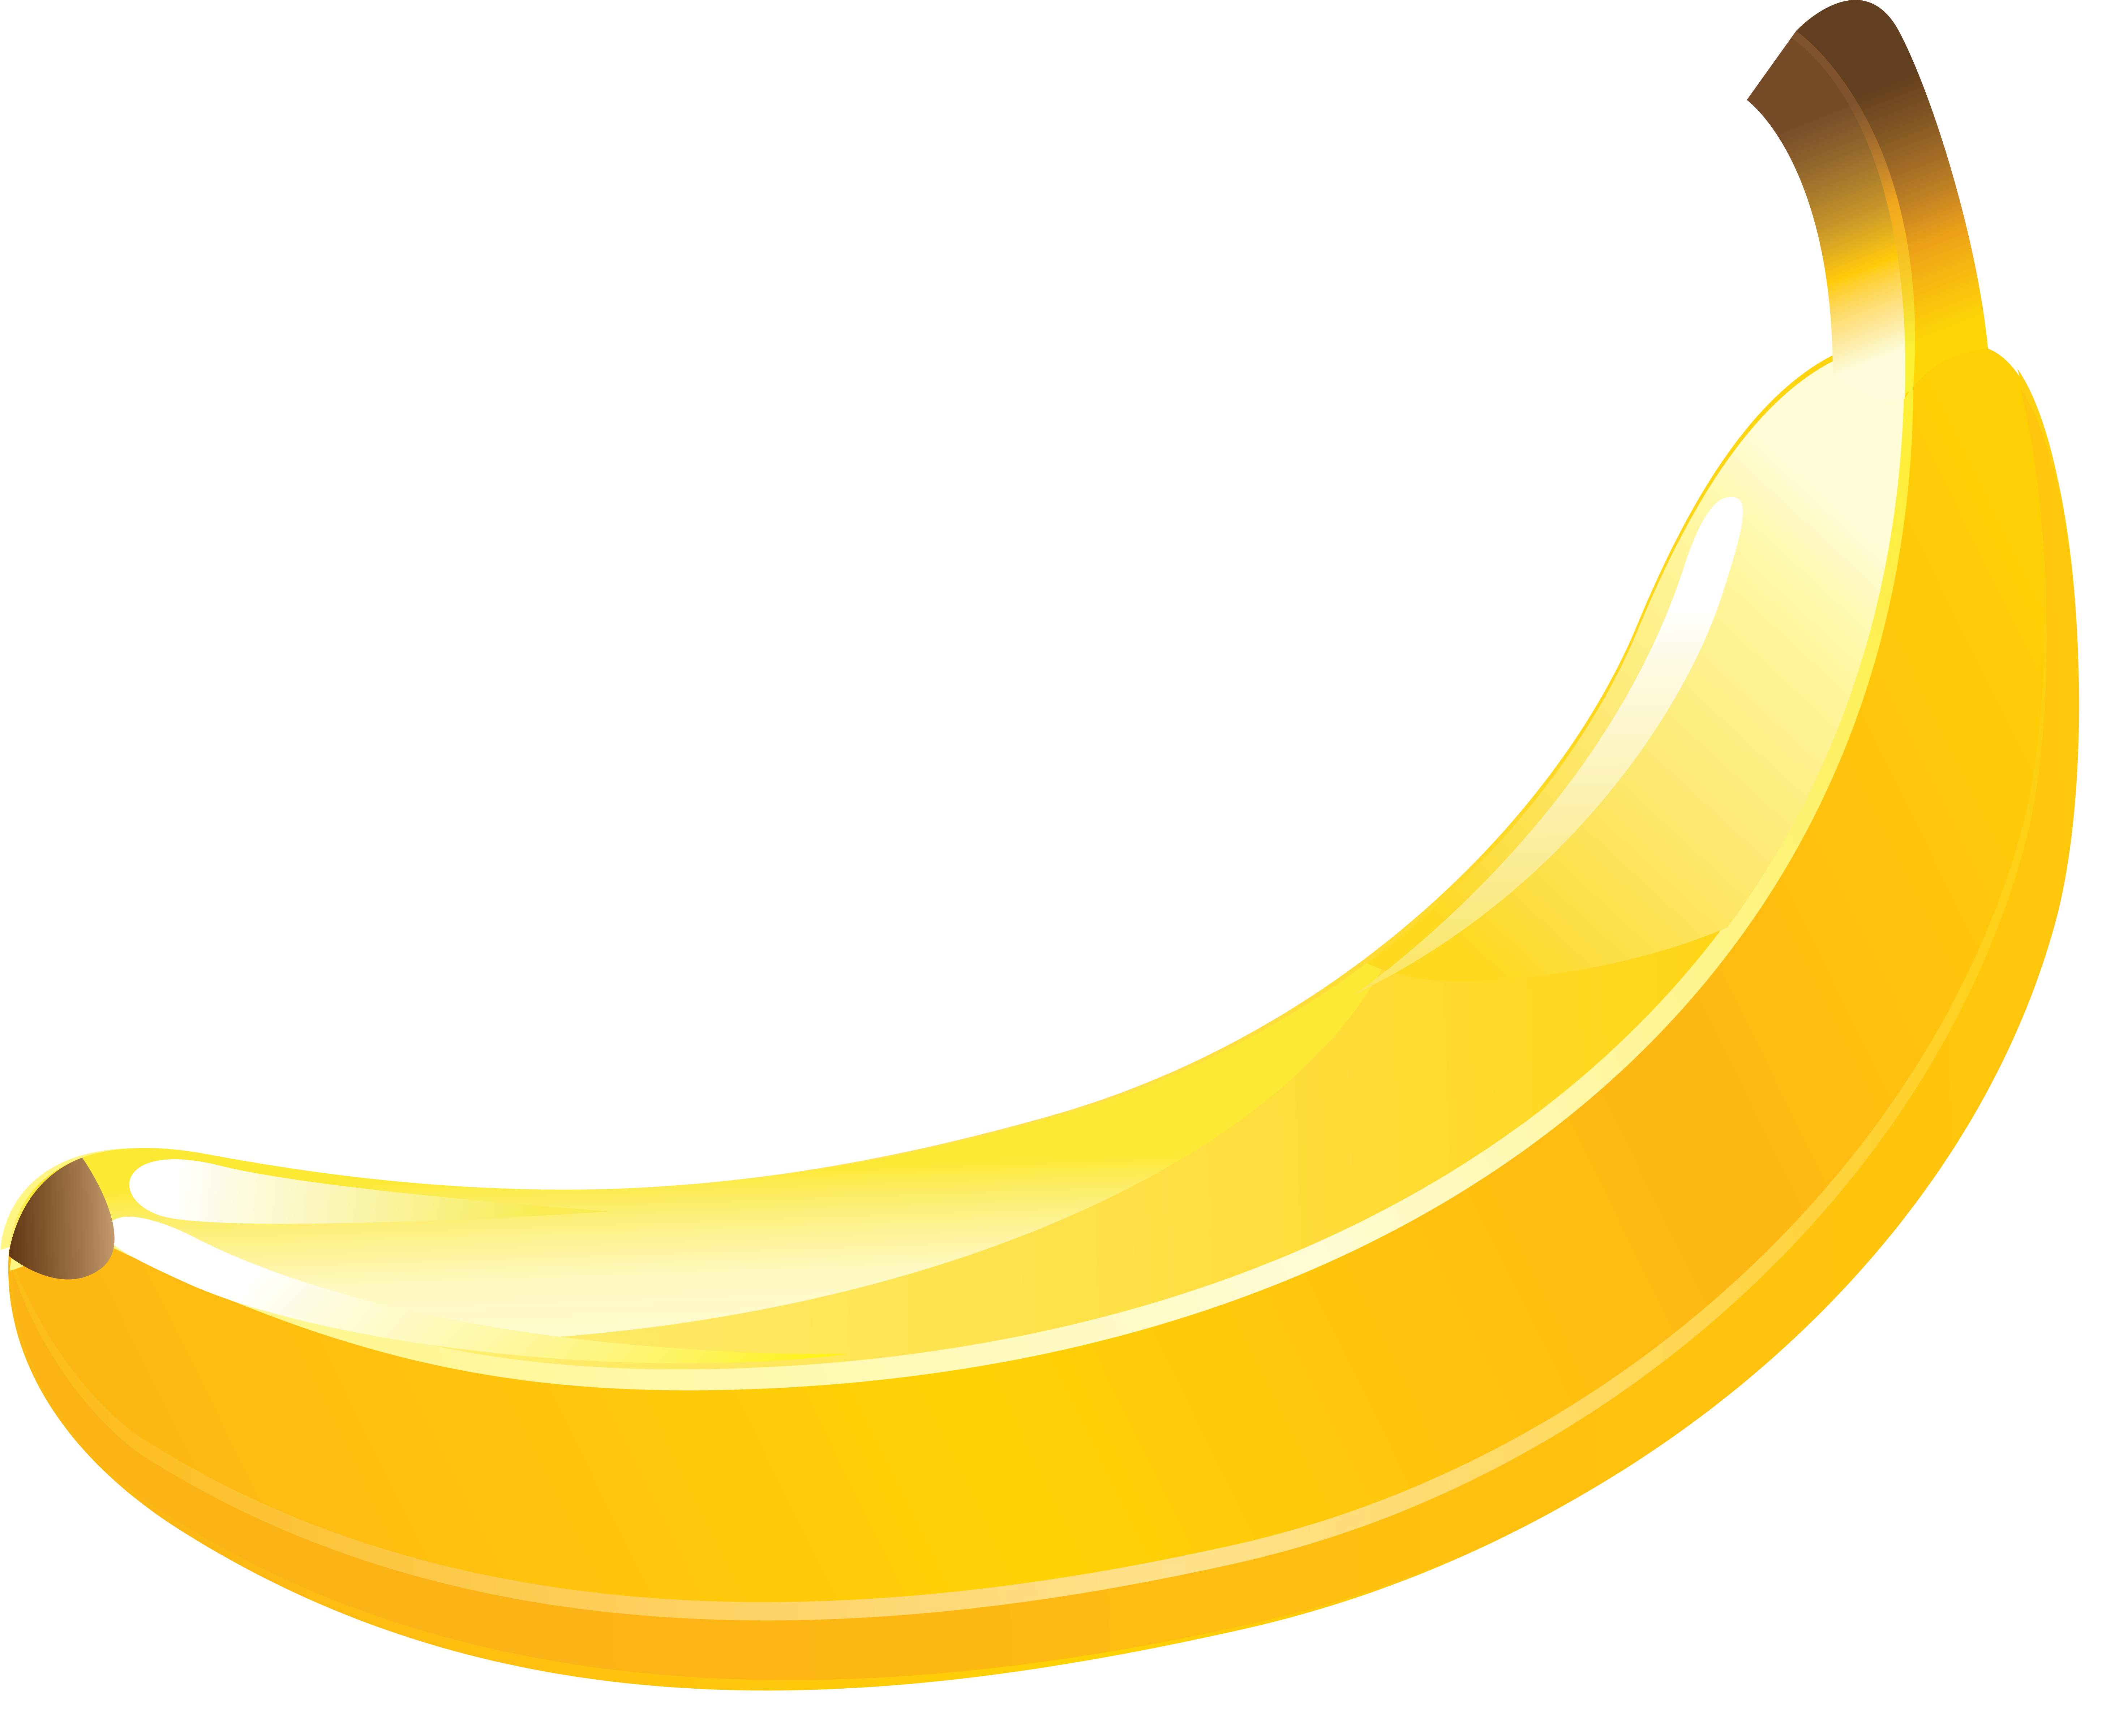 รูปกล้วย